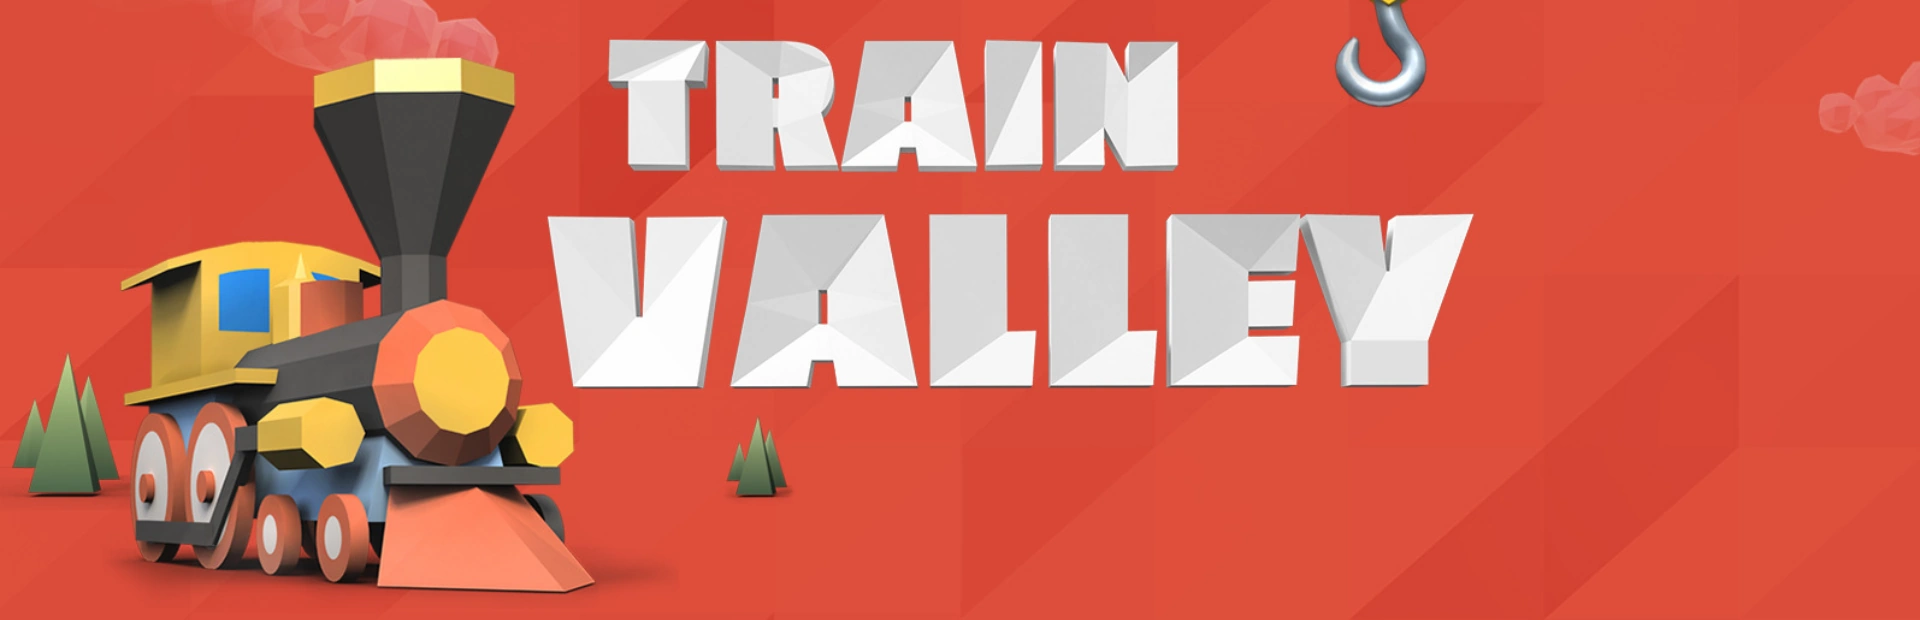 Train.Valley.banner1